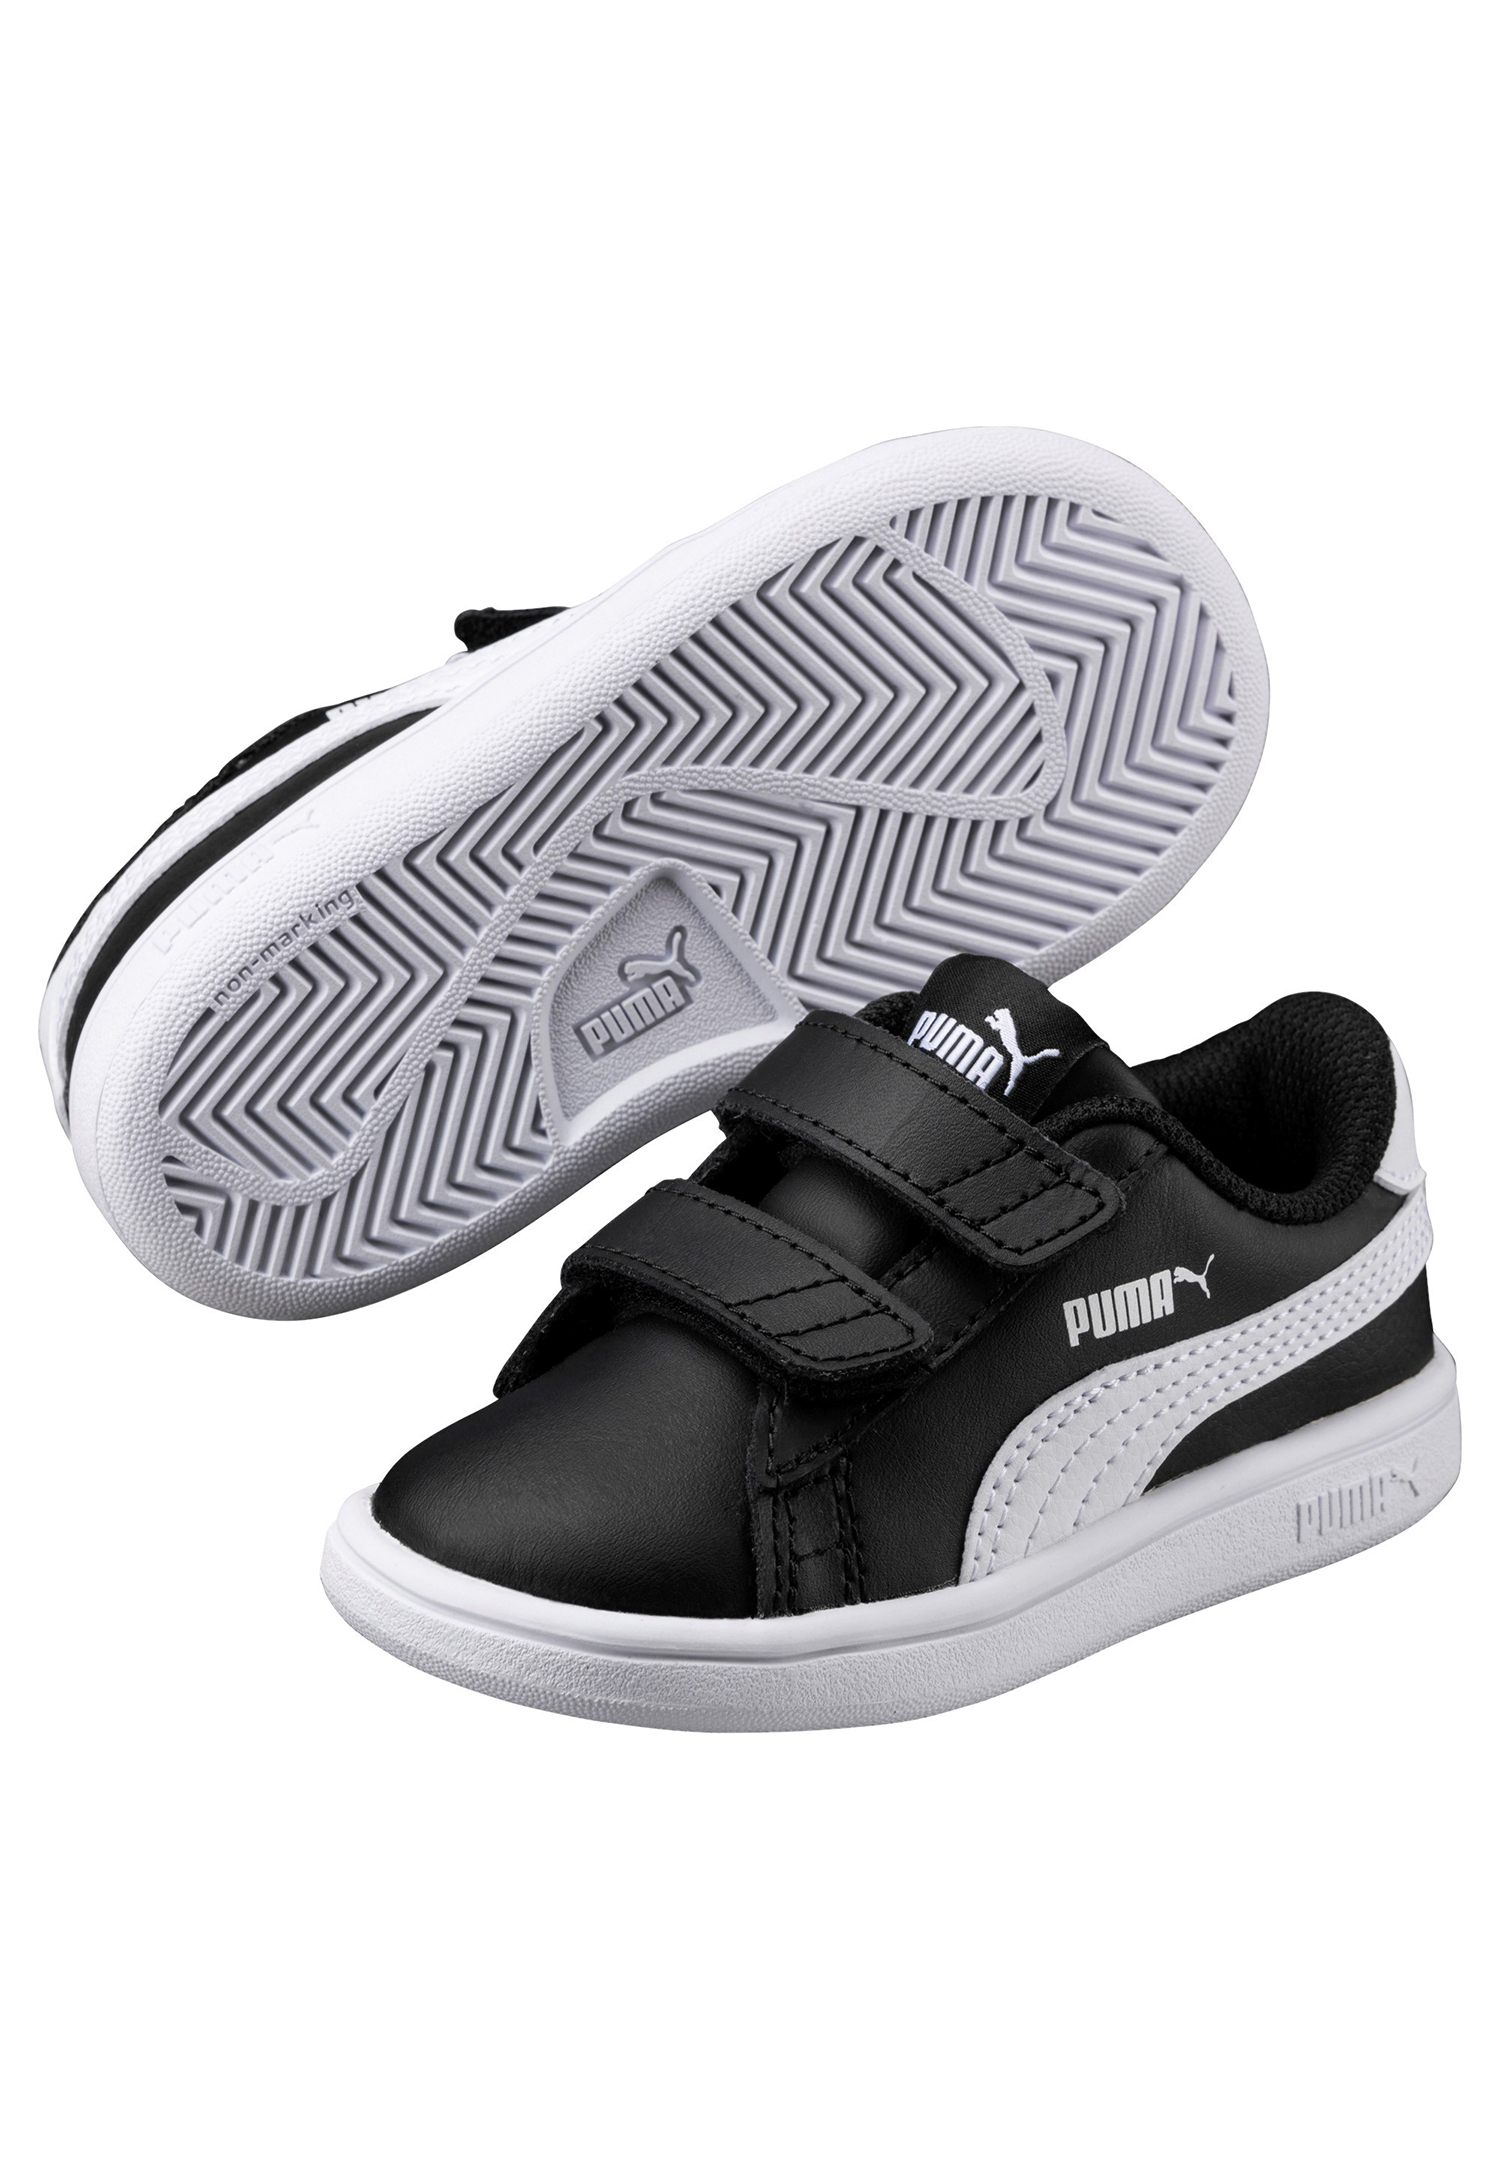 PUMA Smash v2 L V INF Kids Sneaker Schuhe schwarz 365174 03 von Puma